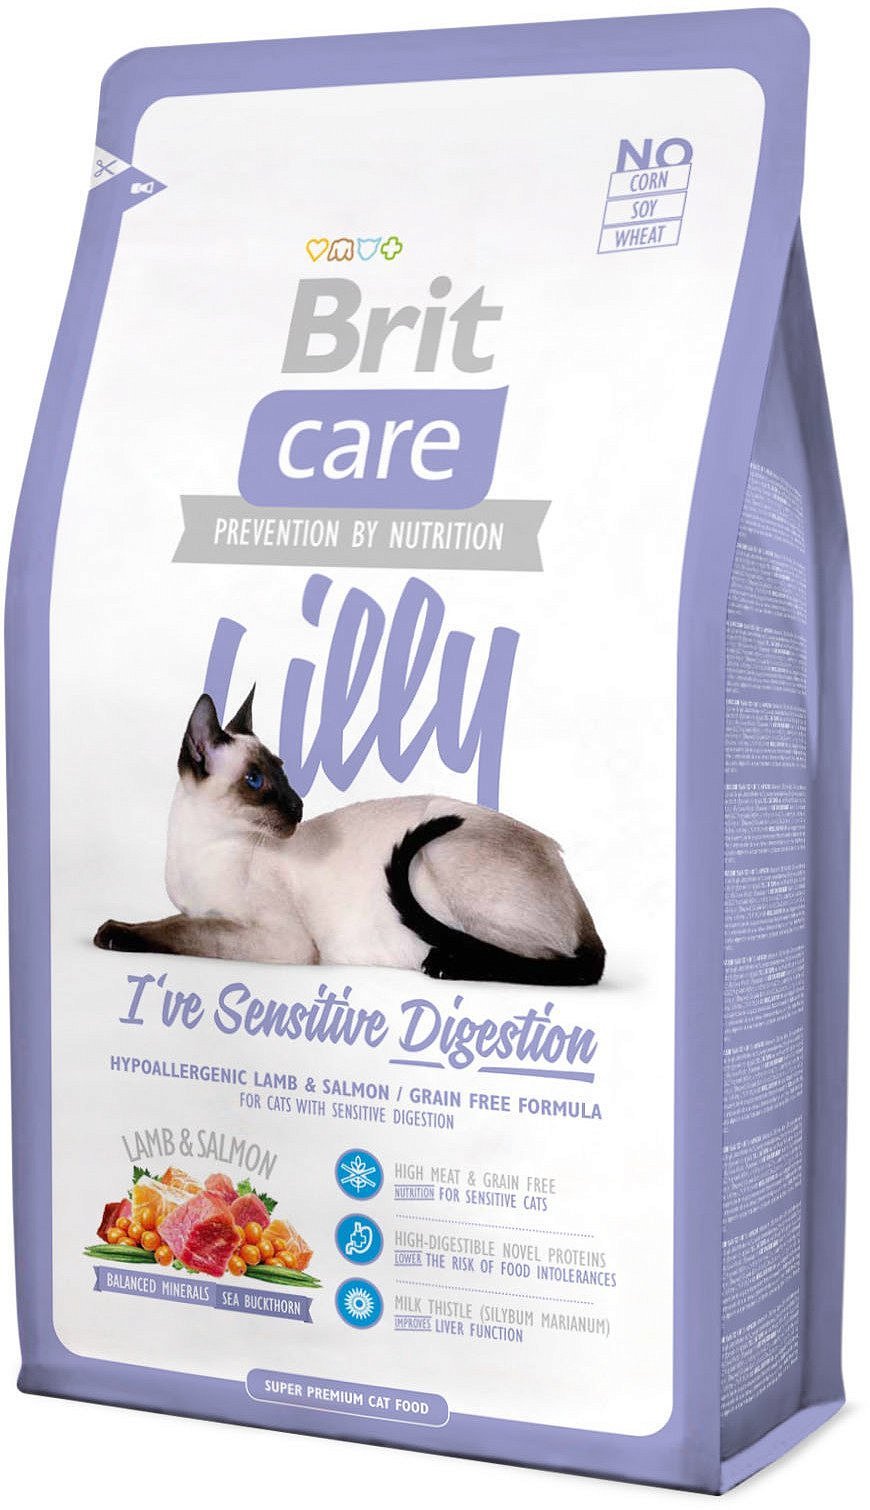 Care Cat Lilly Sensitive Digestion корм для кошек с чувствительным пищеварением, Brit